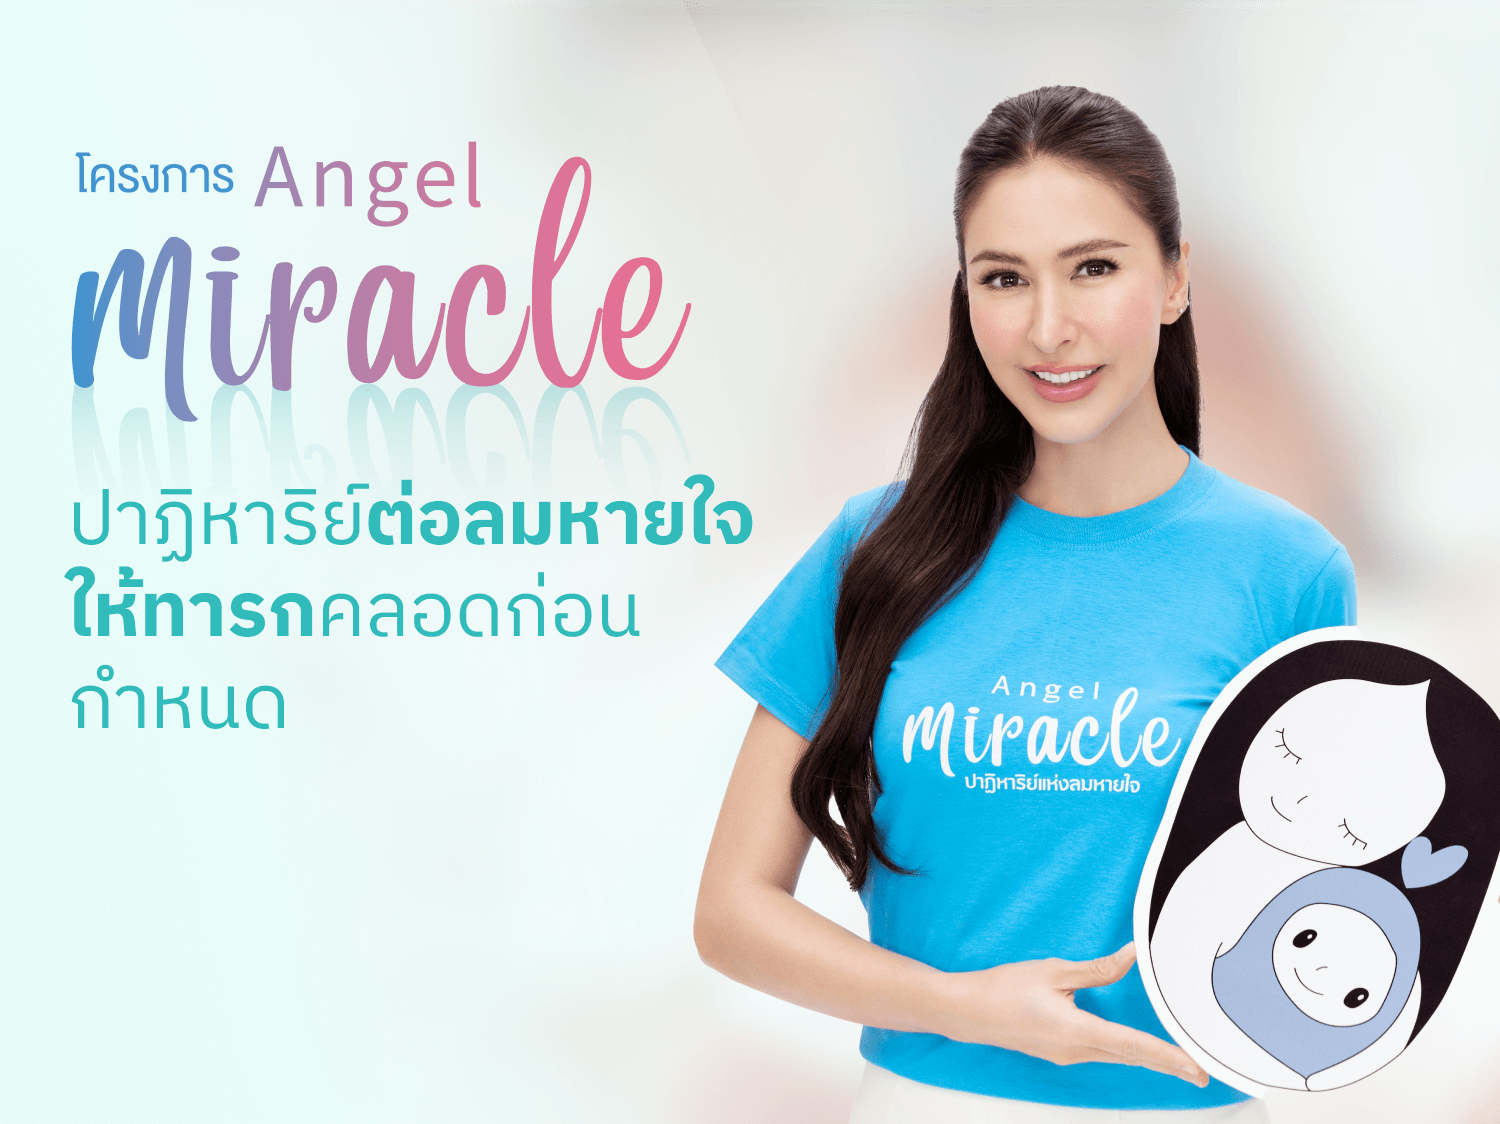 โครงการ Angel Miracle ปาฏิหาริย์ต่อลมหายใจ
                                                                                                                                                                                    ให้ทารกคลอดก่อนกำหนด